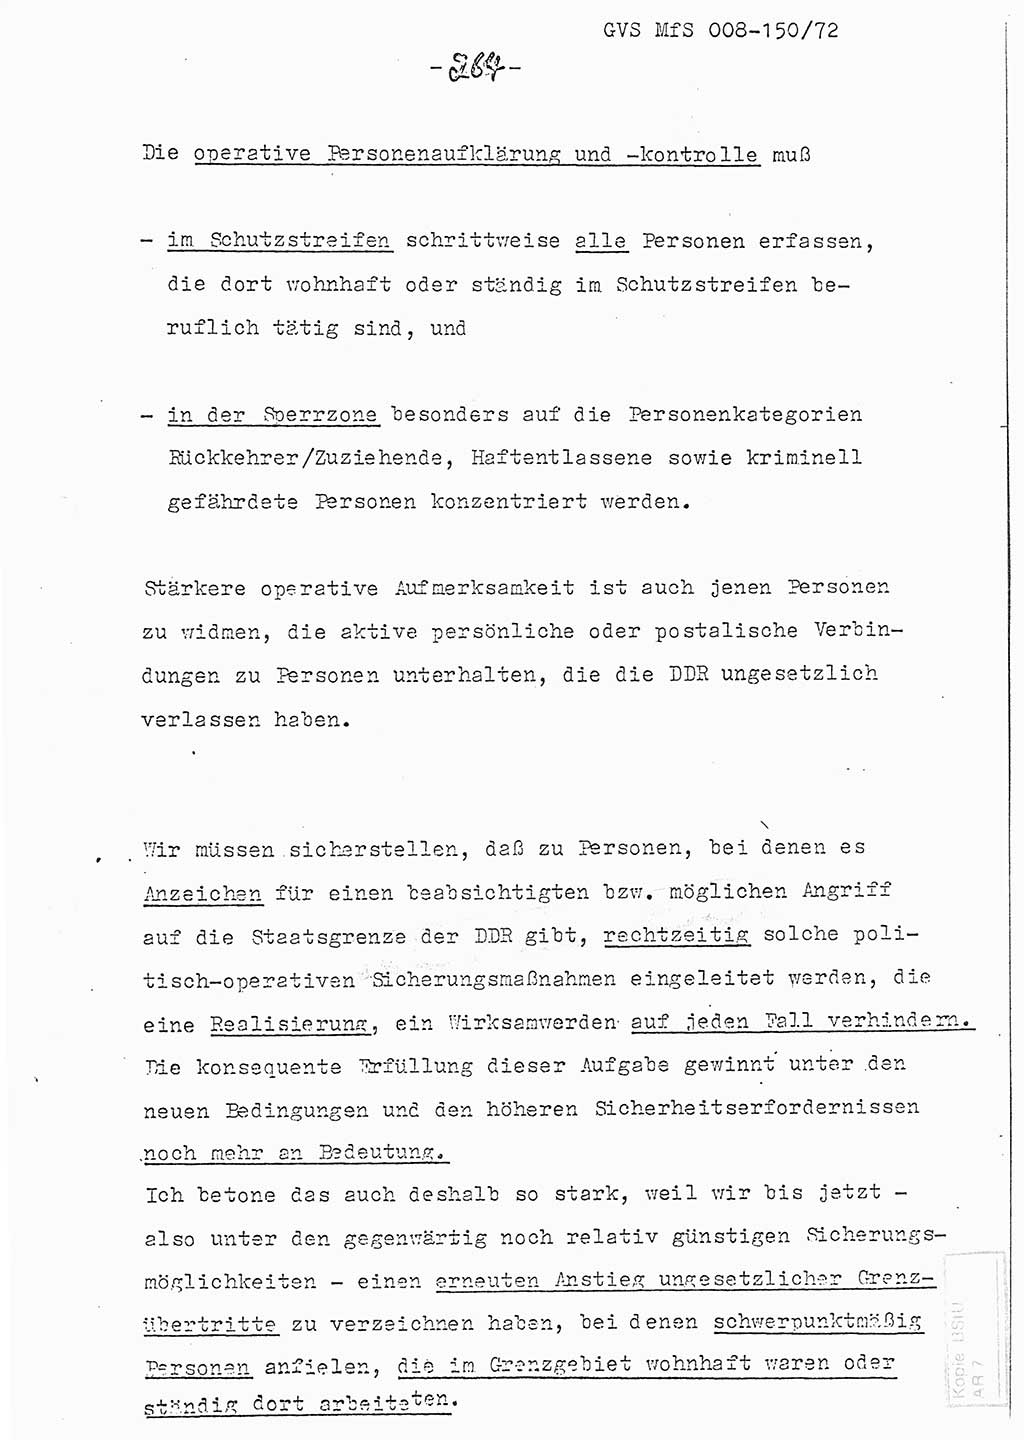 Referat (Entwurf) des Genossen Minister (Generaloberst Erich Mielke) auf der Dienstkonferenz 1972, Ministerium für Staatssicherheit (MfS) [Deutsche Demokratische Republik (DDR)], Der Minister, Geheime Verschlußsache (GVS) 008-150/72, Berlin 25.2.1972, Seite 264 (Ref. Entw. DK MfS DDR Min. GVS 008-150/72 1972, S. 264)